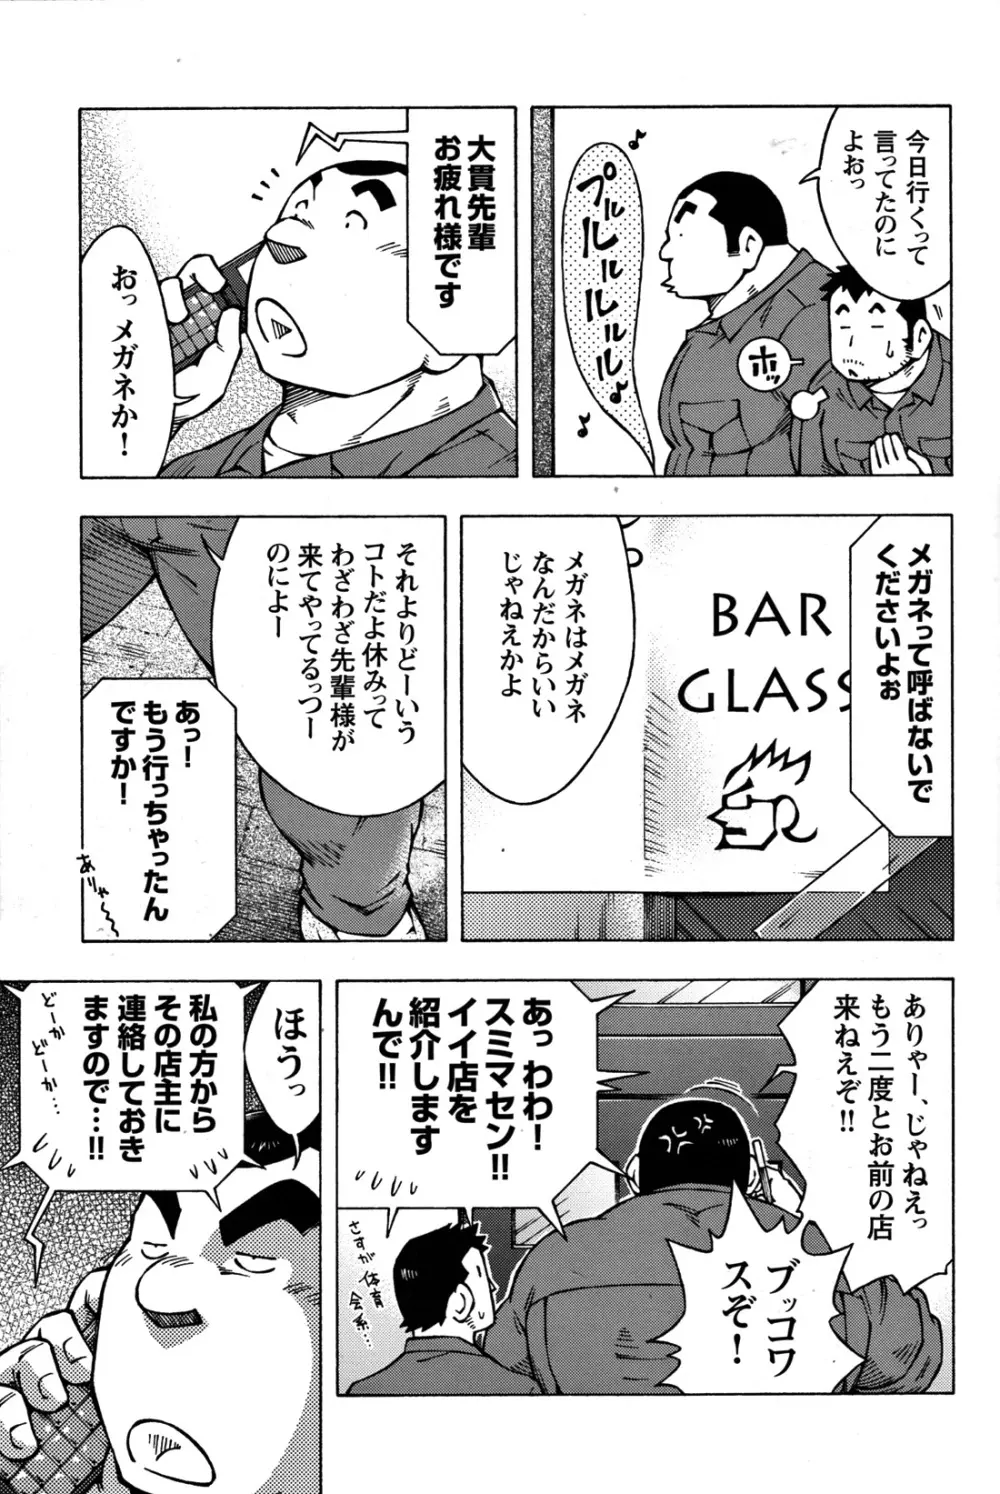 Comic G-men Gaho No.07 48ページ